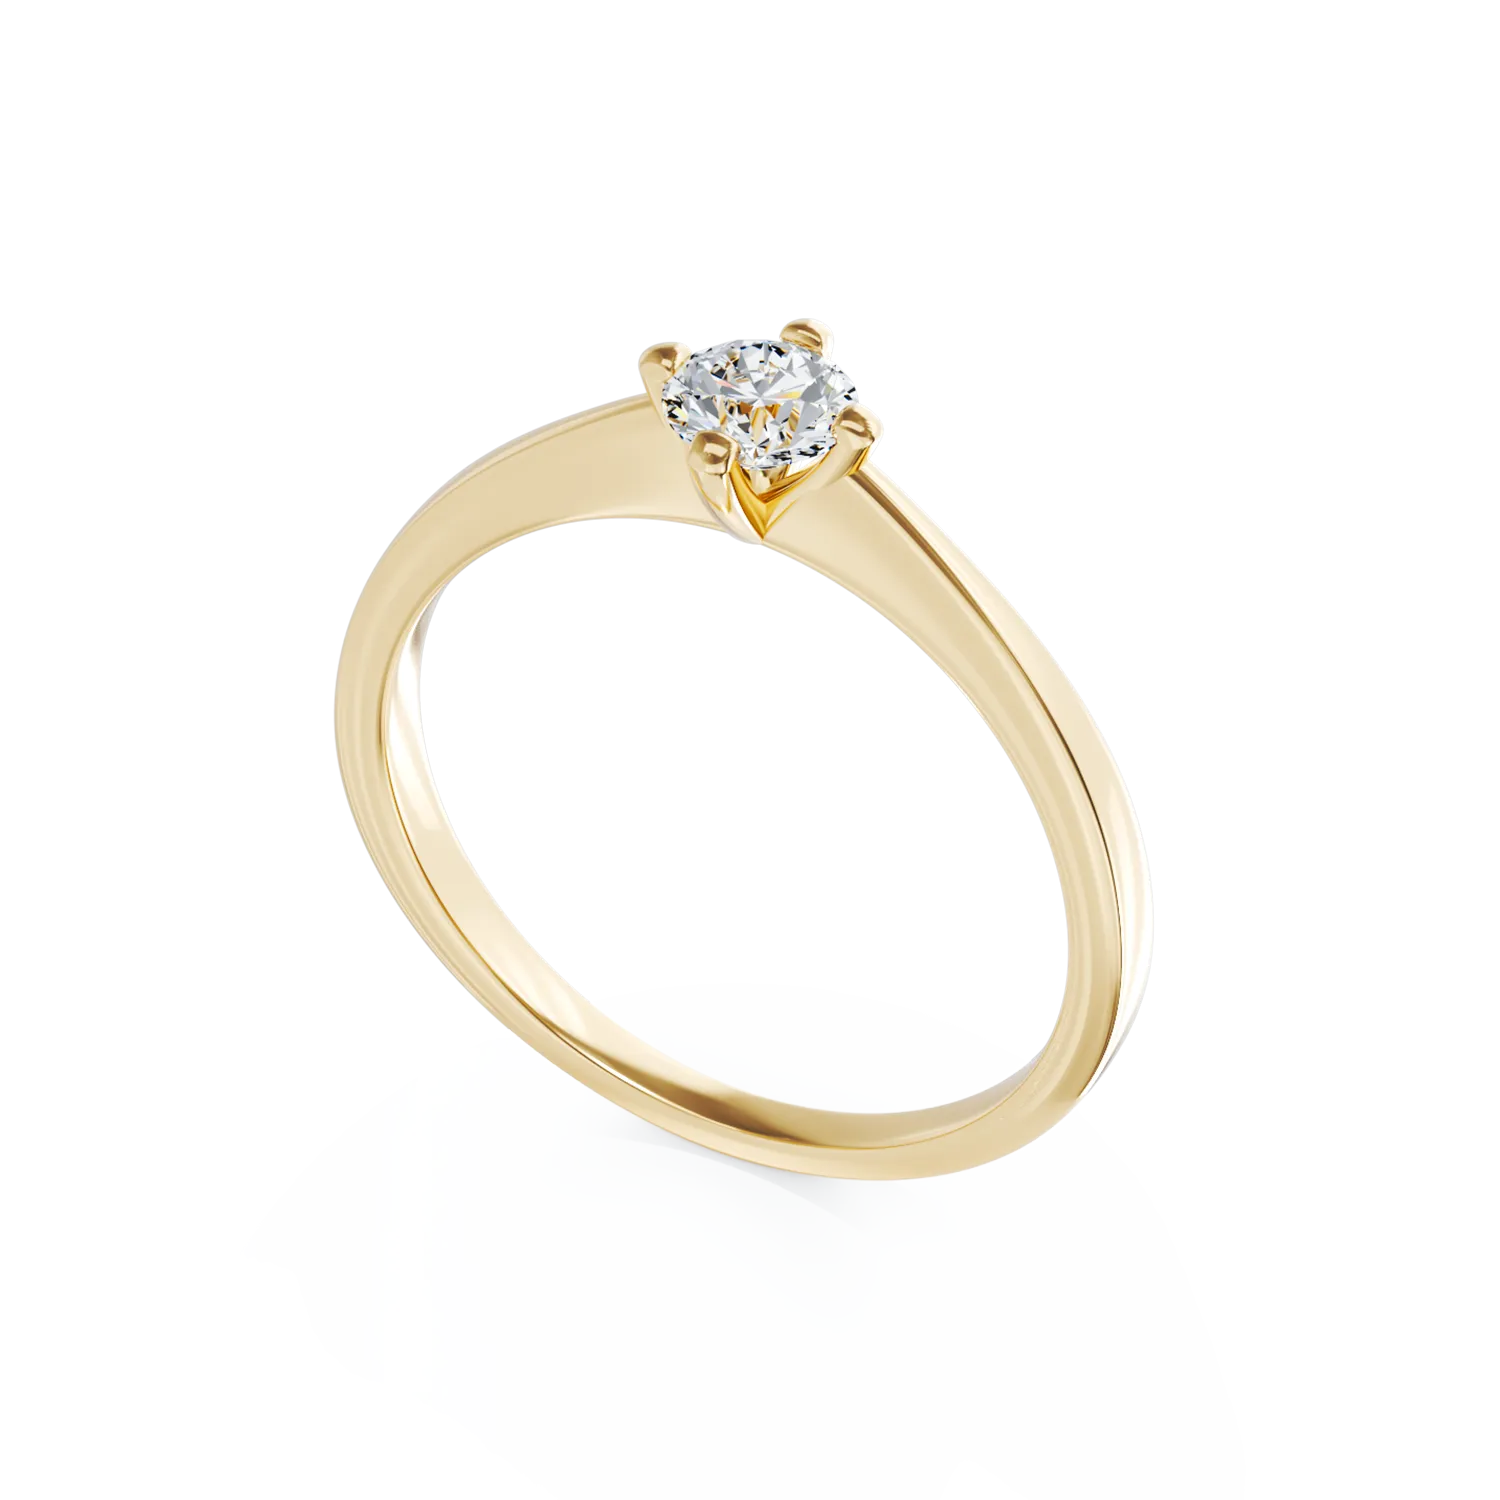 Eljegyzési gyűrű 18K-os sárga aranyból 0,305ct gyémánttal. Gramm: 2,55